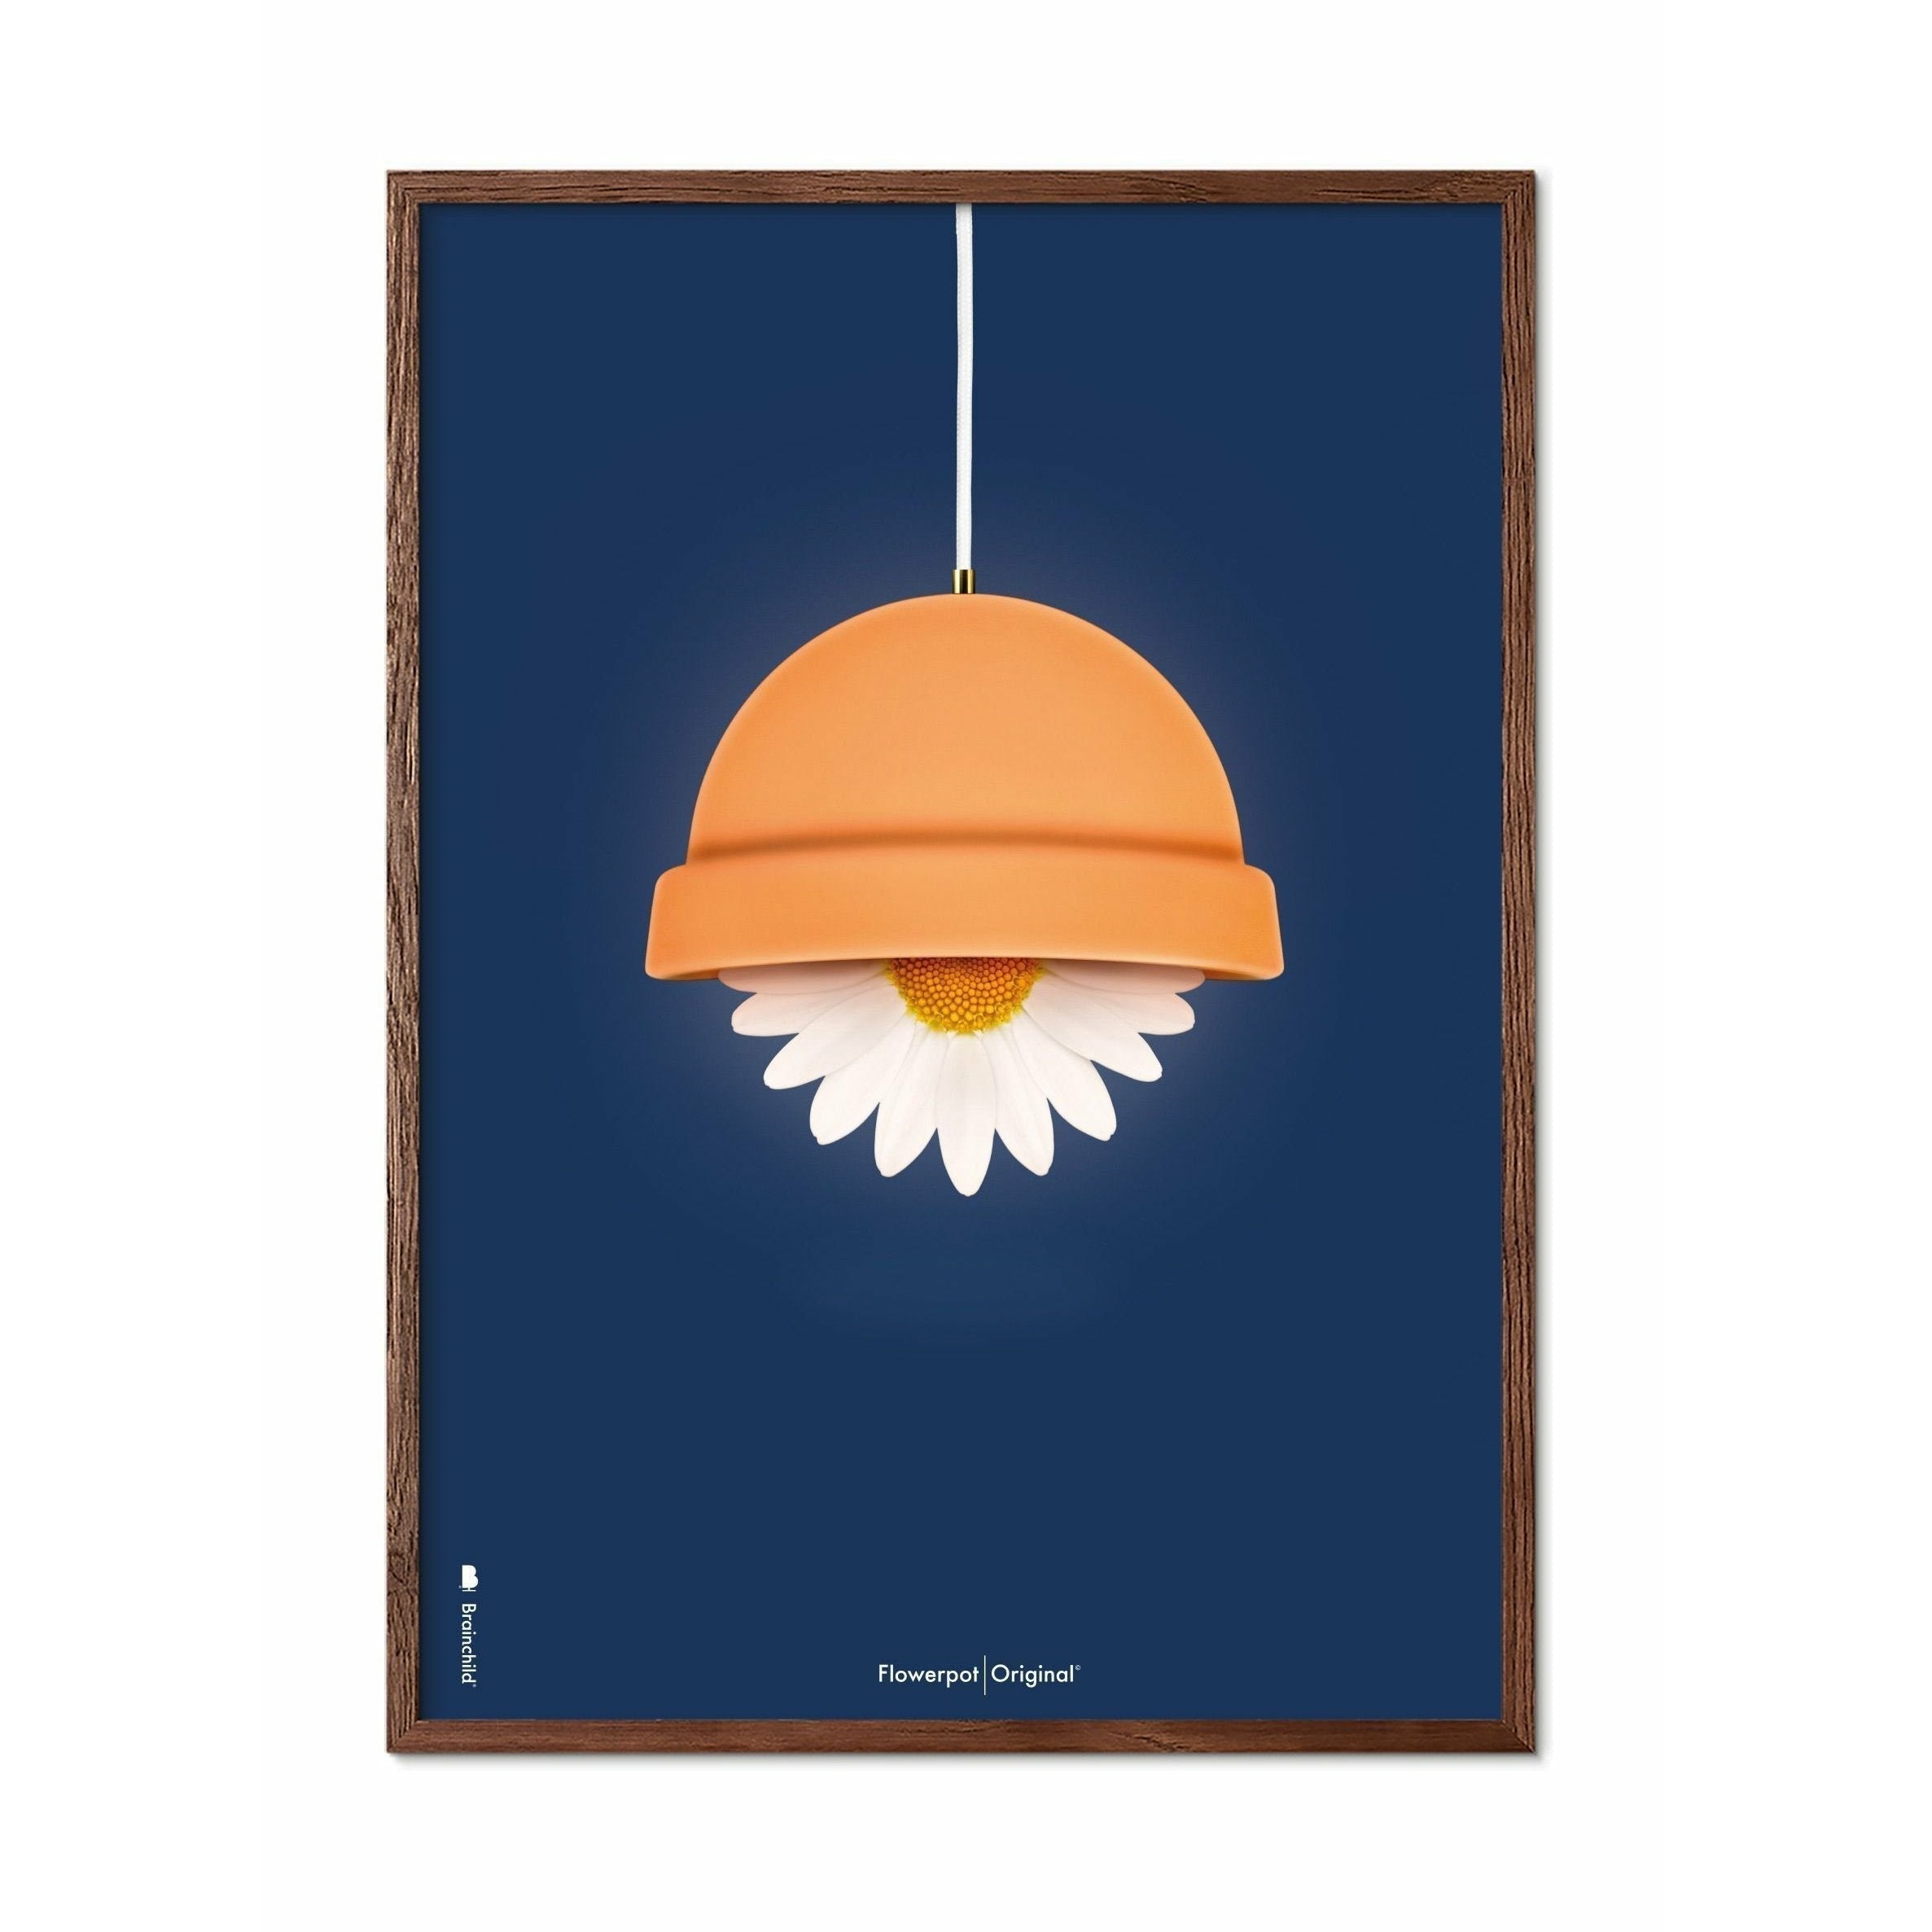 Brainchild Blumentopf Classic Poster, dunkler Holzrahmen 70x100 Cm, dunkelblauer Hintergrund